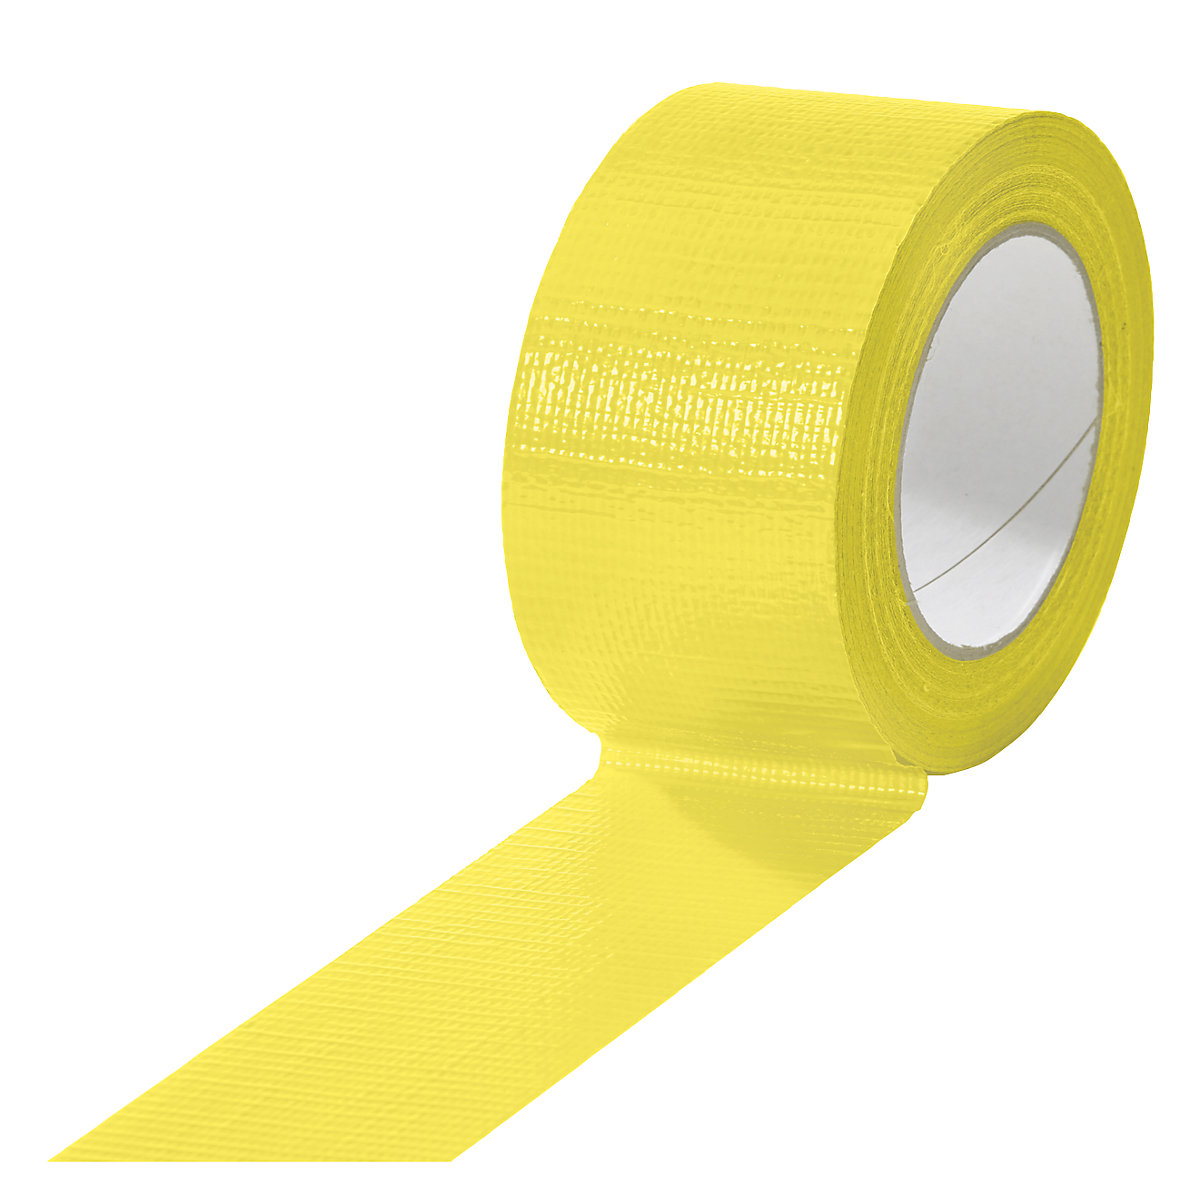 Gewebeband, in verschiedenen Farben, VE 18 Rollen, gelb, Bandbreite 50 mm